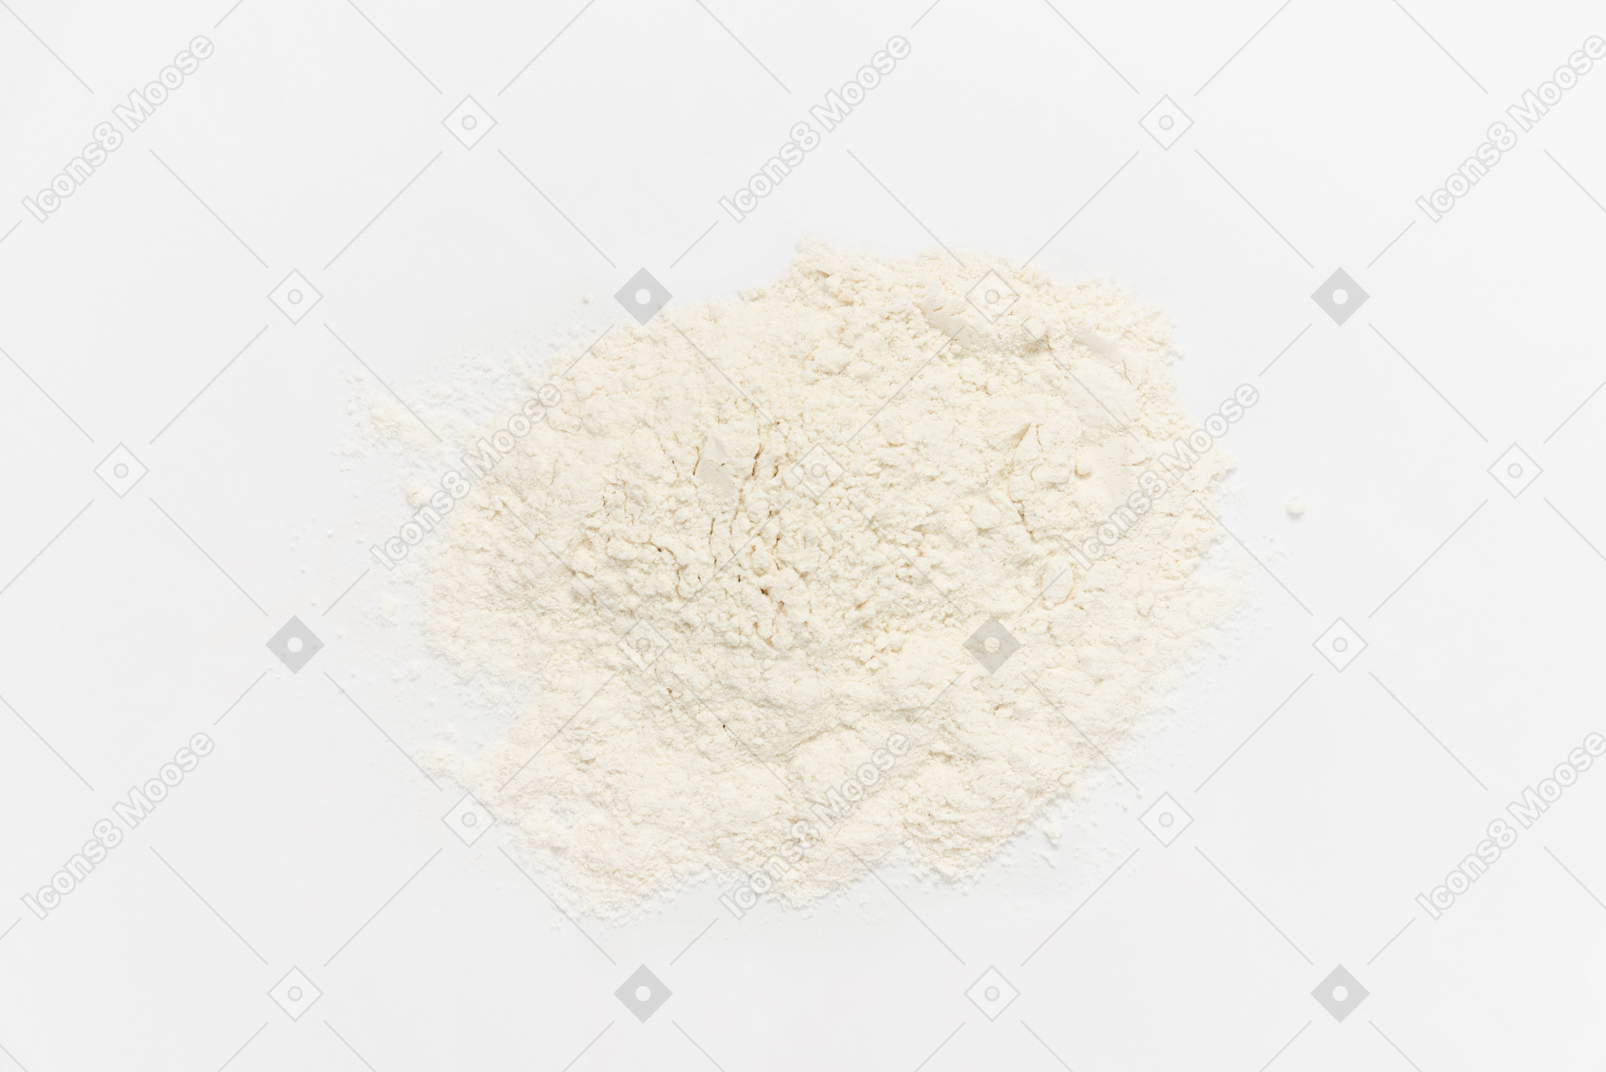 Farina in polvere su sfondo bianco